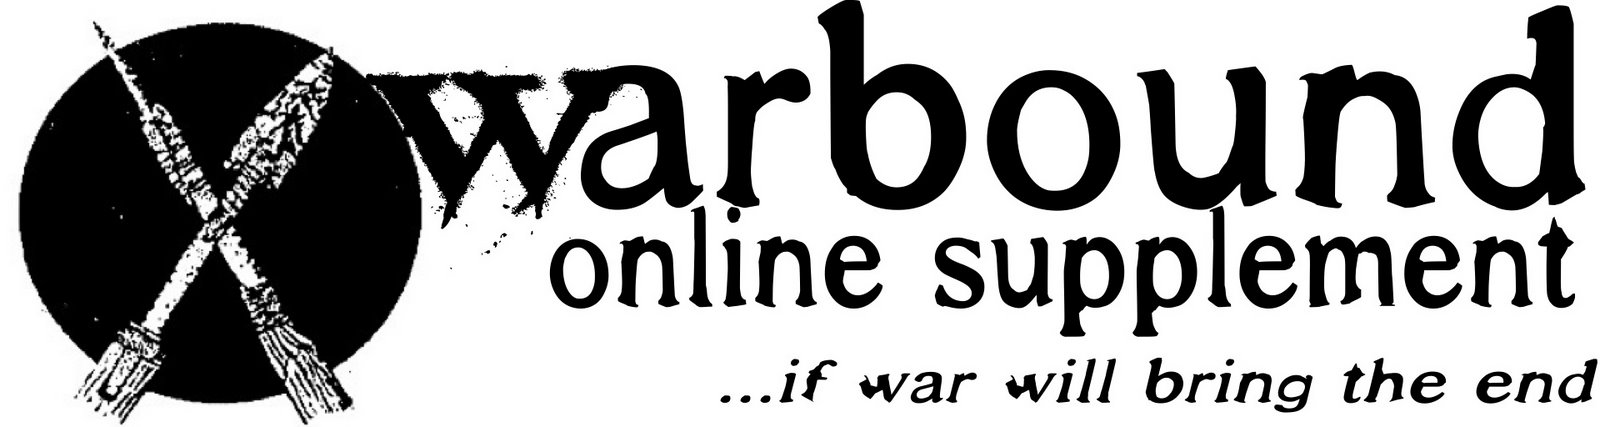 the warbound online supplement